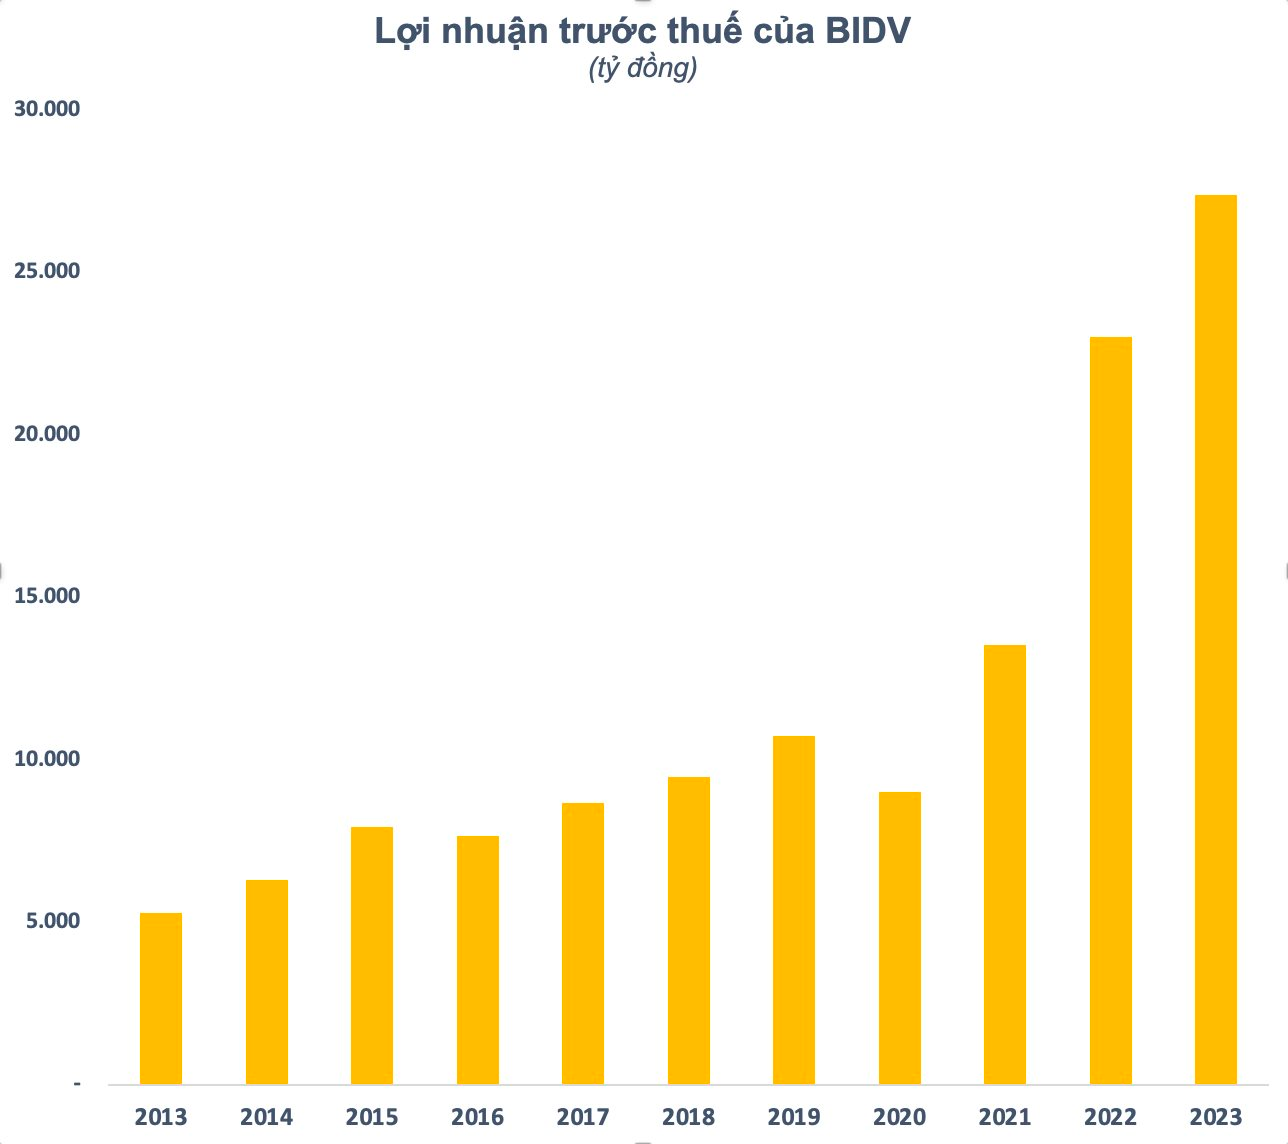 Cổ phiếu BIDV lên đỉnh lịch sử, Keb Hana Bank lãi gấp đôi sau hơn 4 năm làm cổ đông chiến lược - Ảnh 2.